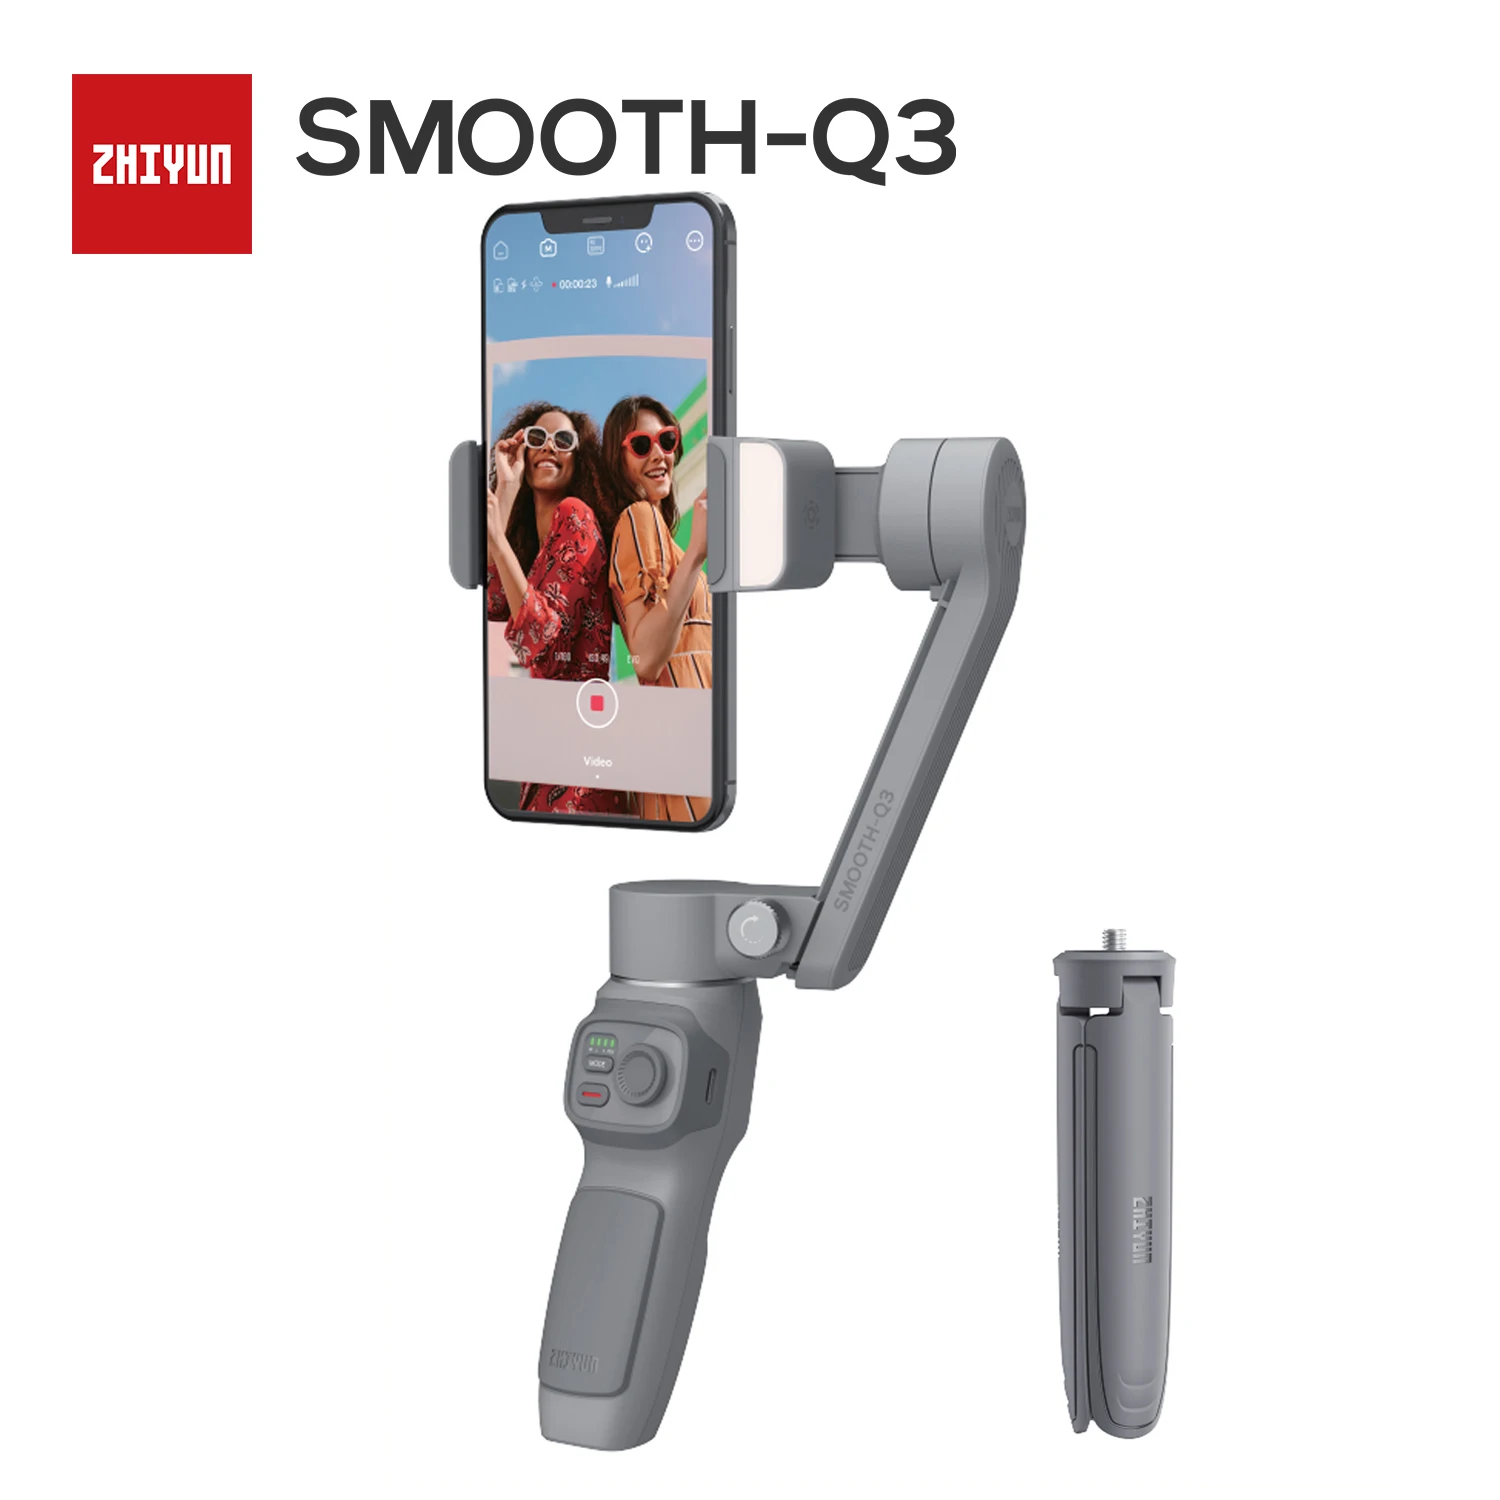 ZHIYUN официальный гладкой SMOOTH Q3 смартфонов карданный 3 осевой карманный телефон Ручной Стабилизатор для смартфонов iPhone, Samsung, HUAWEI